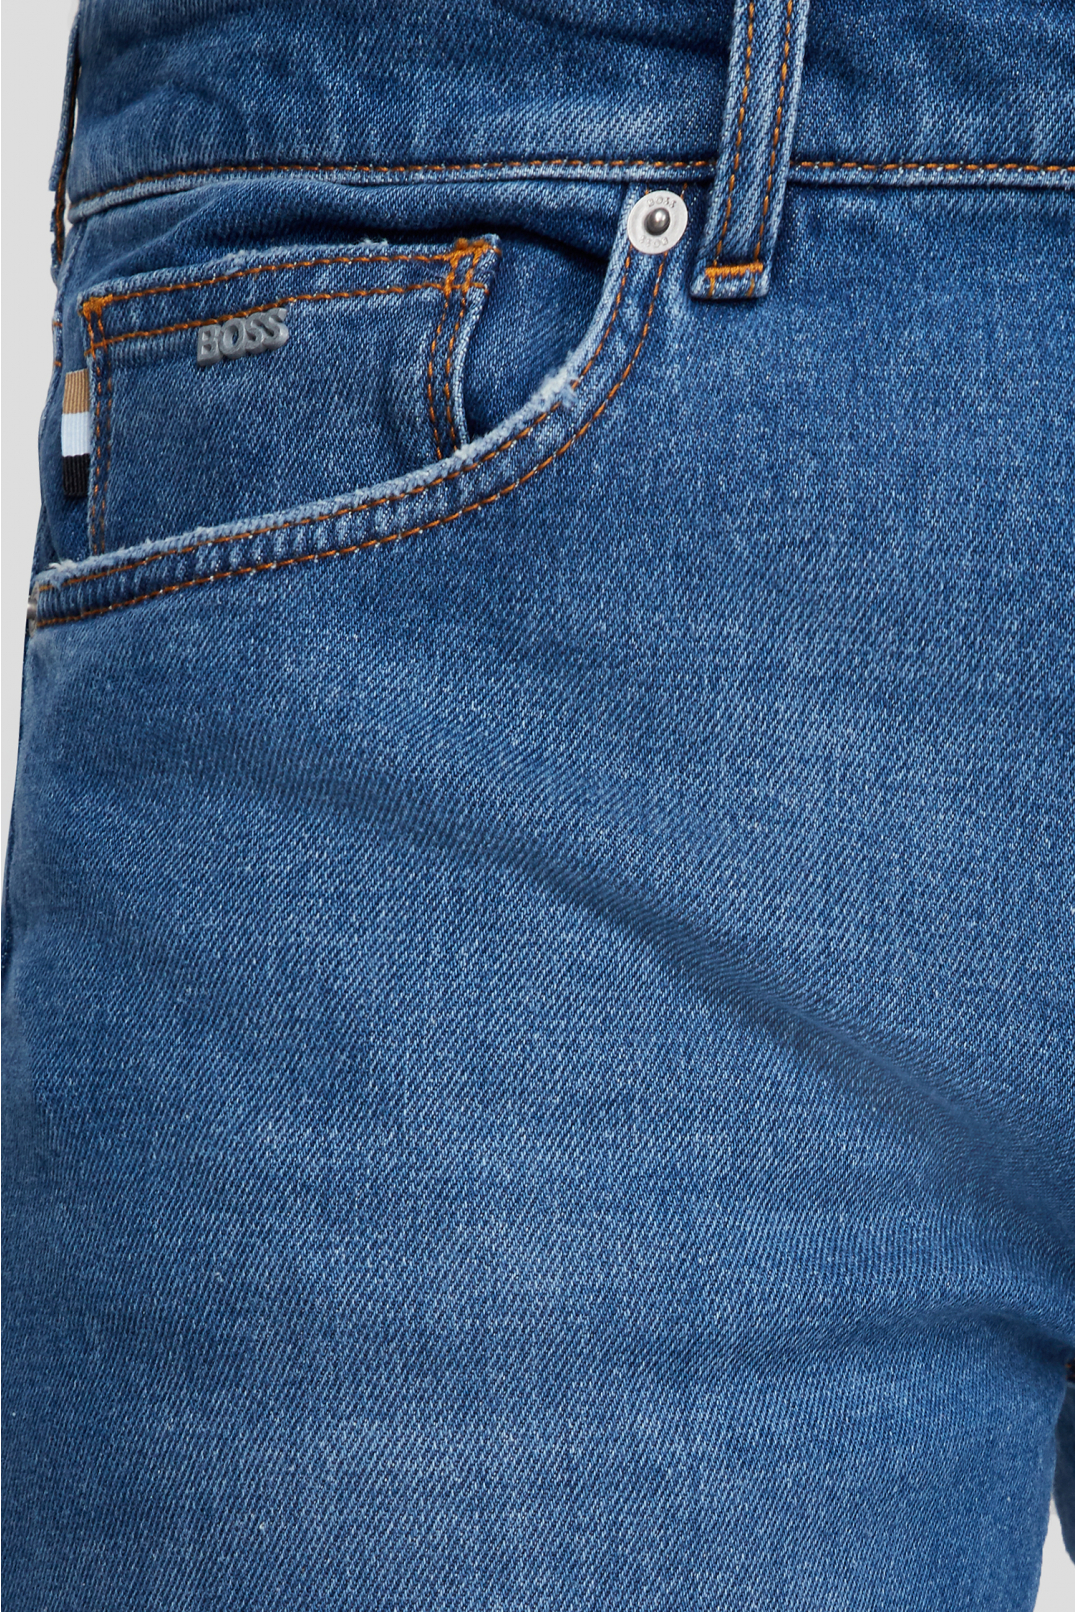 Мужские синие джинсы - 3